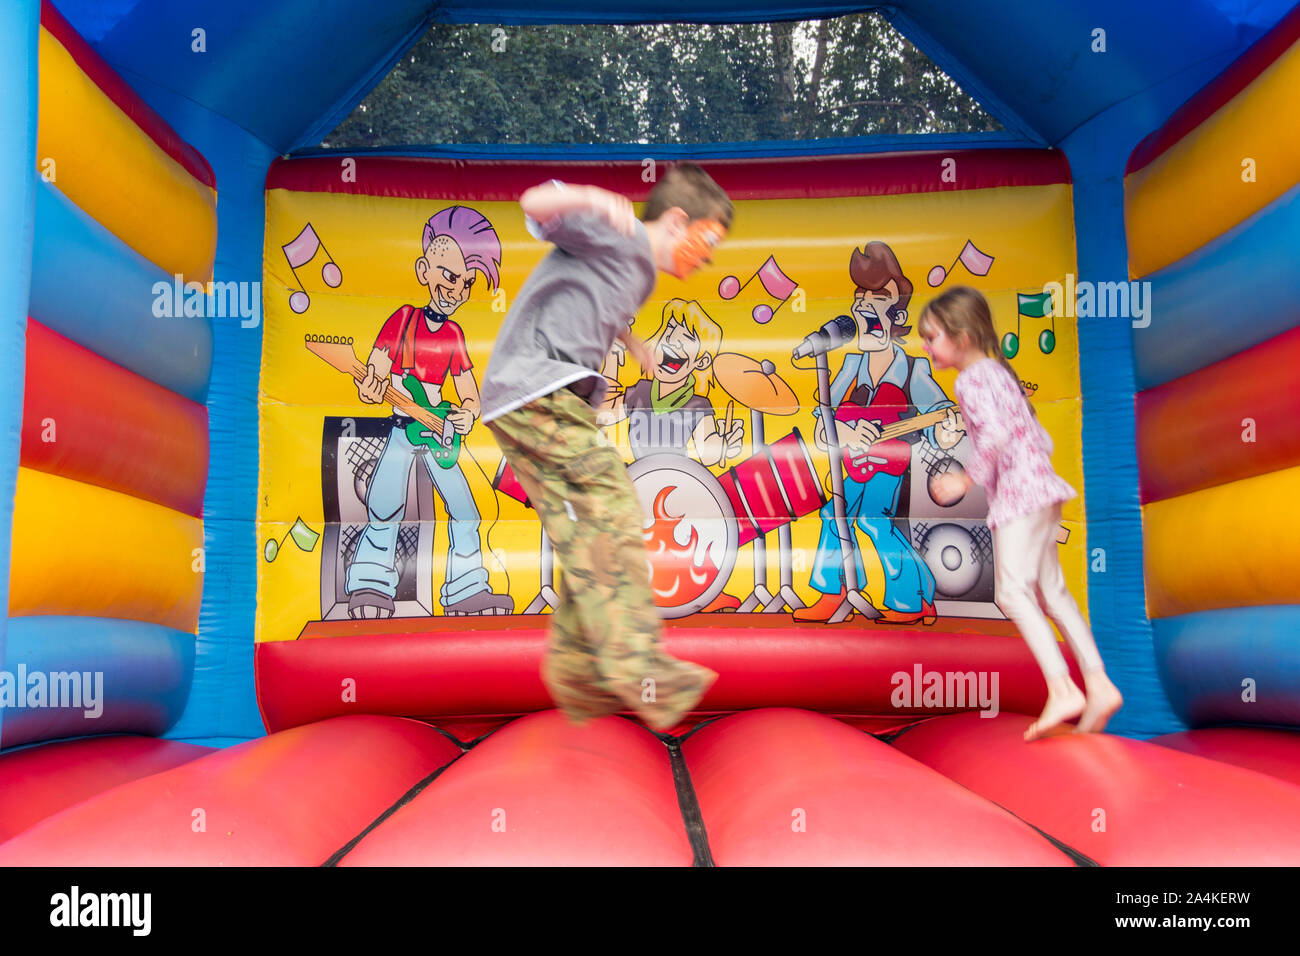 Sheffield, Großbritannien: 1 Aug 2016: Zwei Kinder springen auf einer Hüpfburg aufblasbare Spielzeug in St Mary's Church Family Fun Day Stockfoto